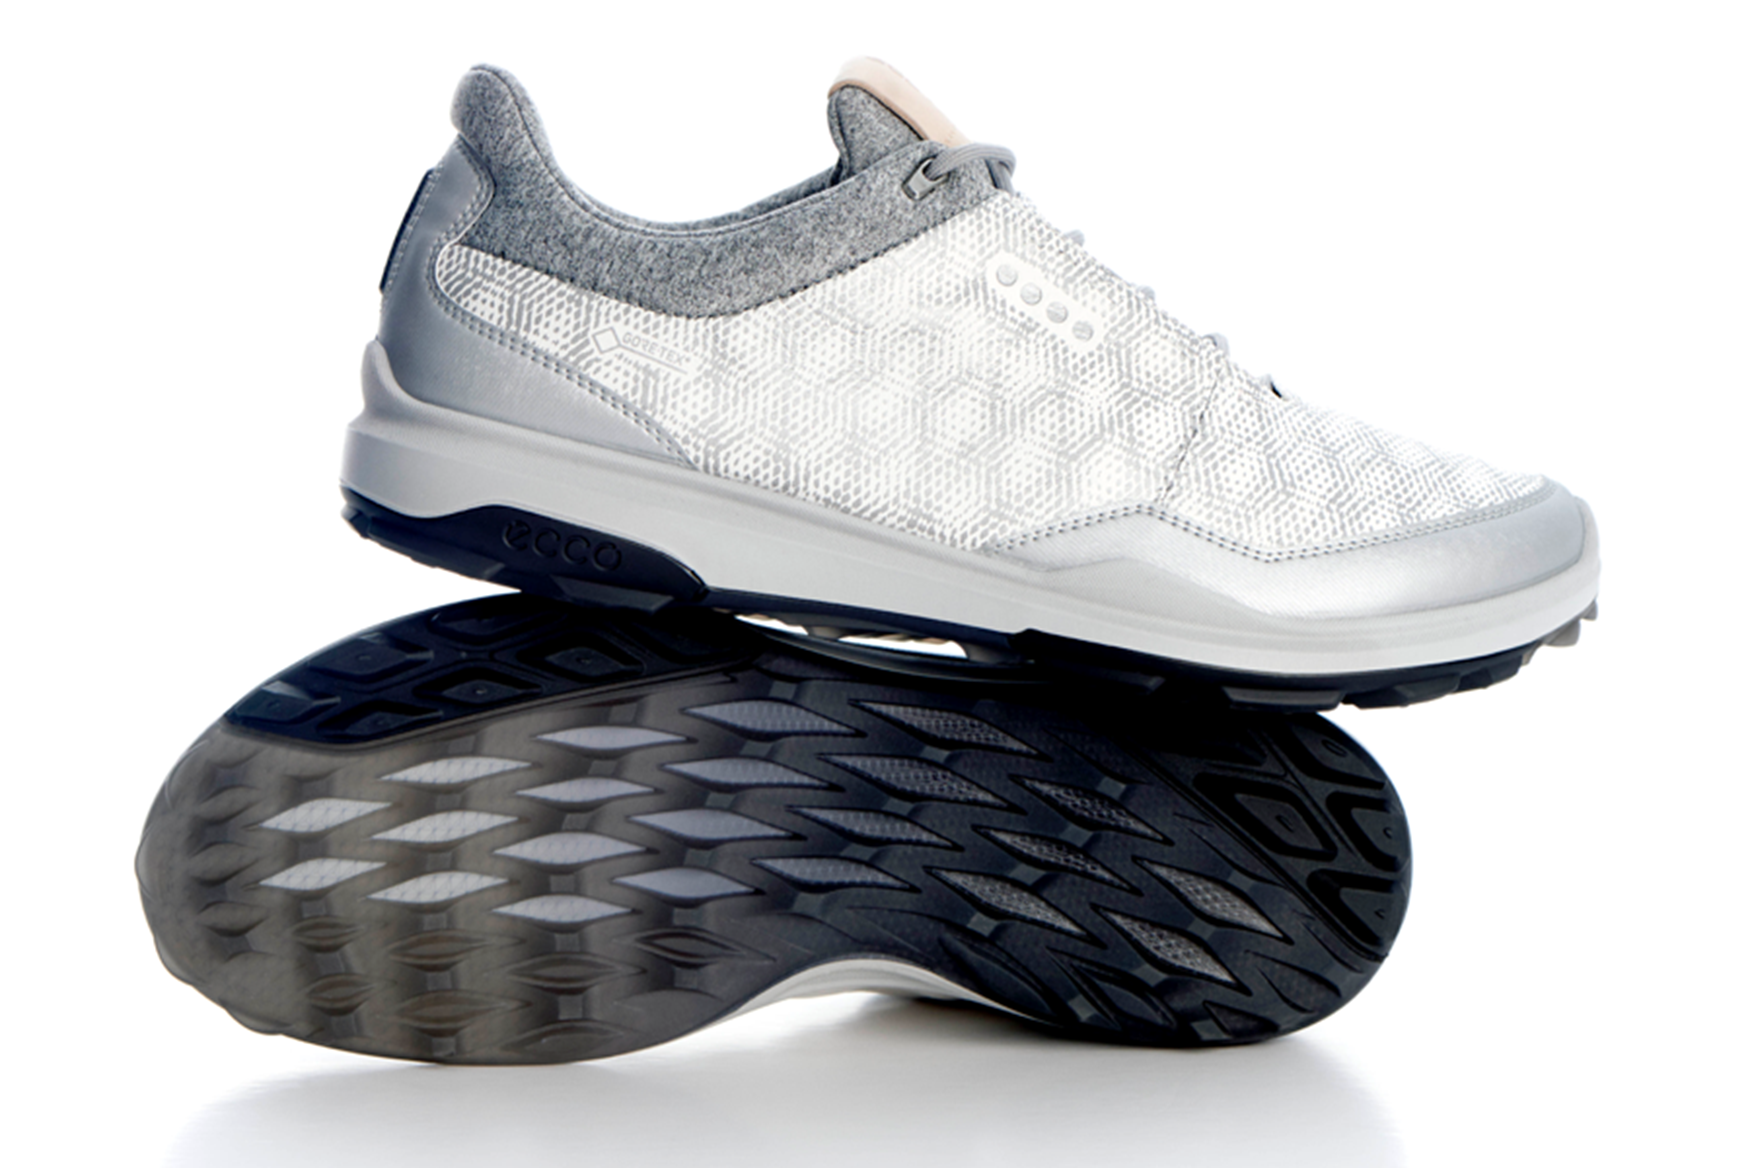 Ecco Biom Hybrid 3 Golf Shoes Review 